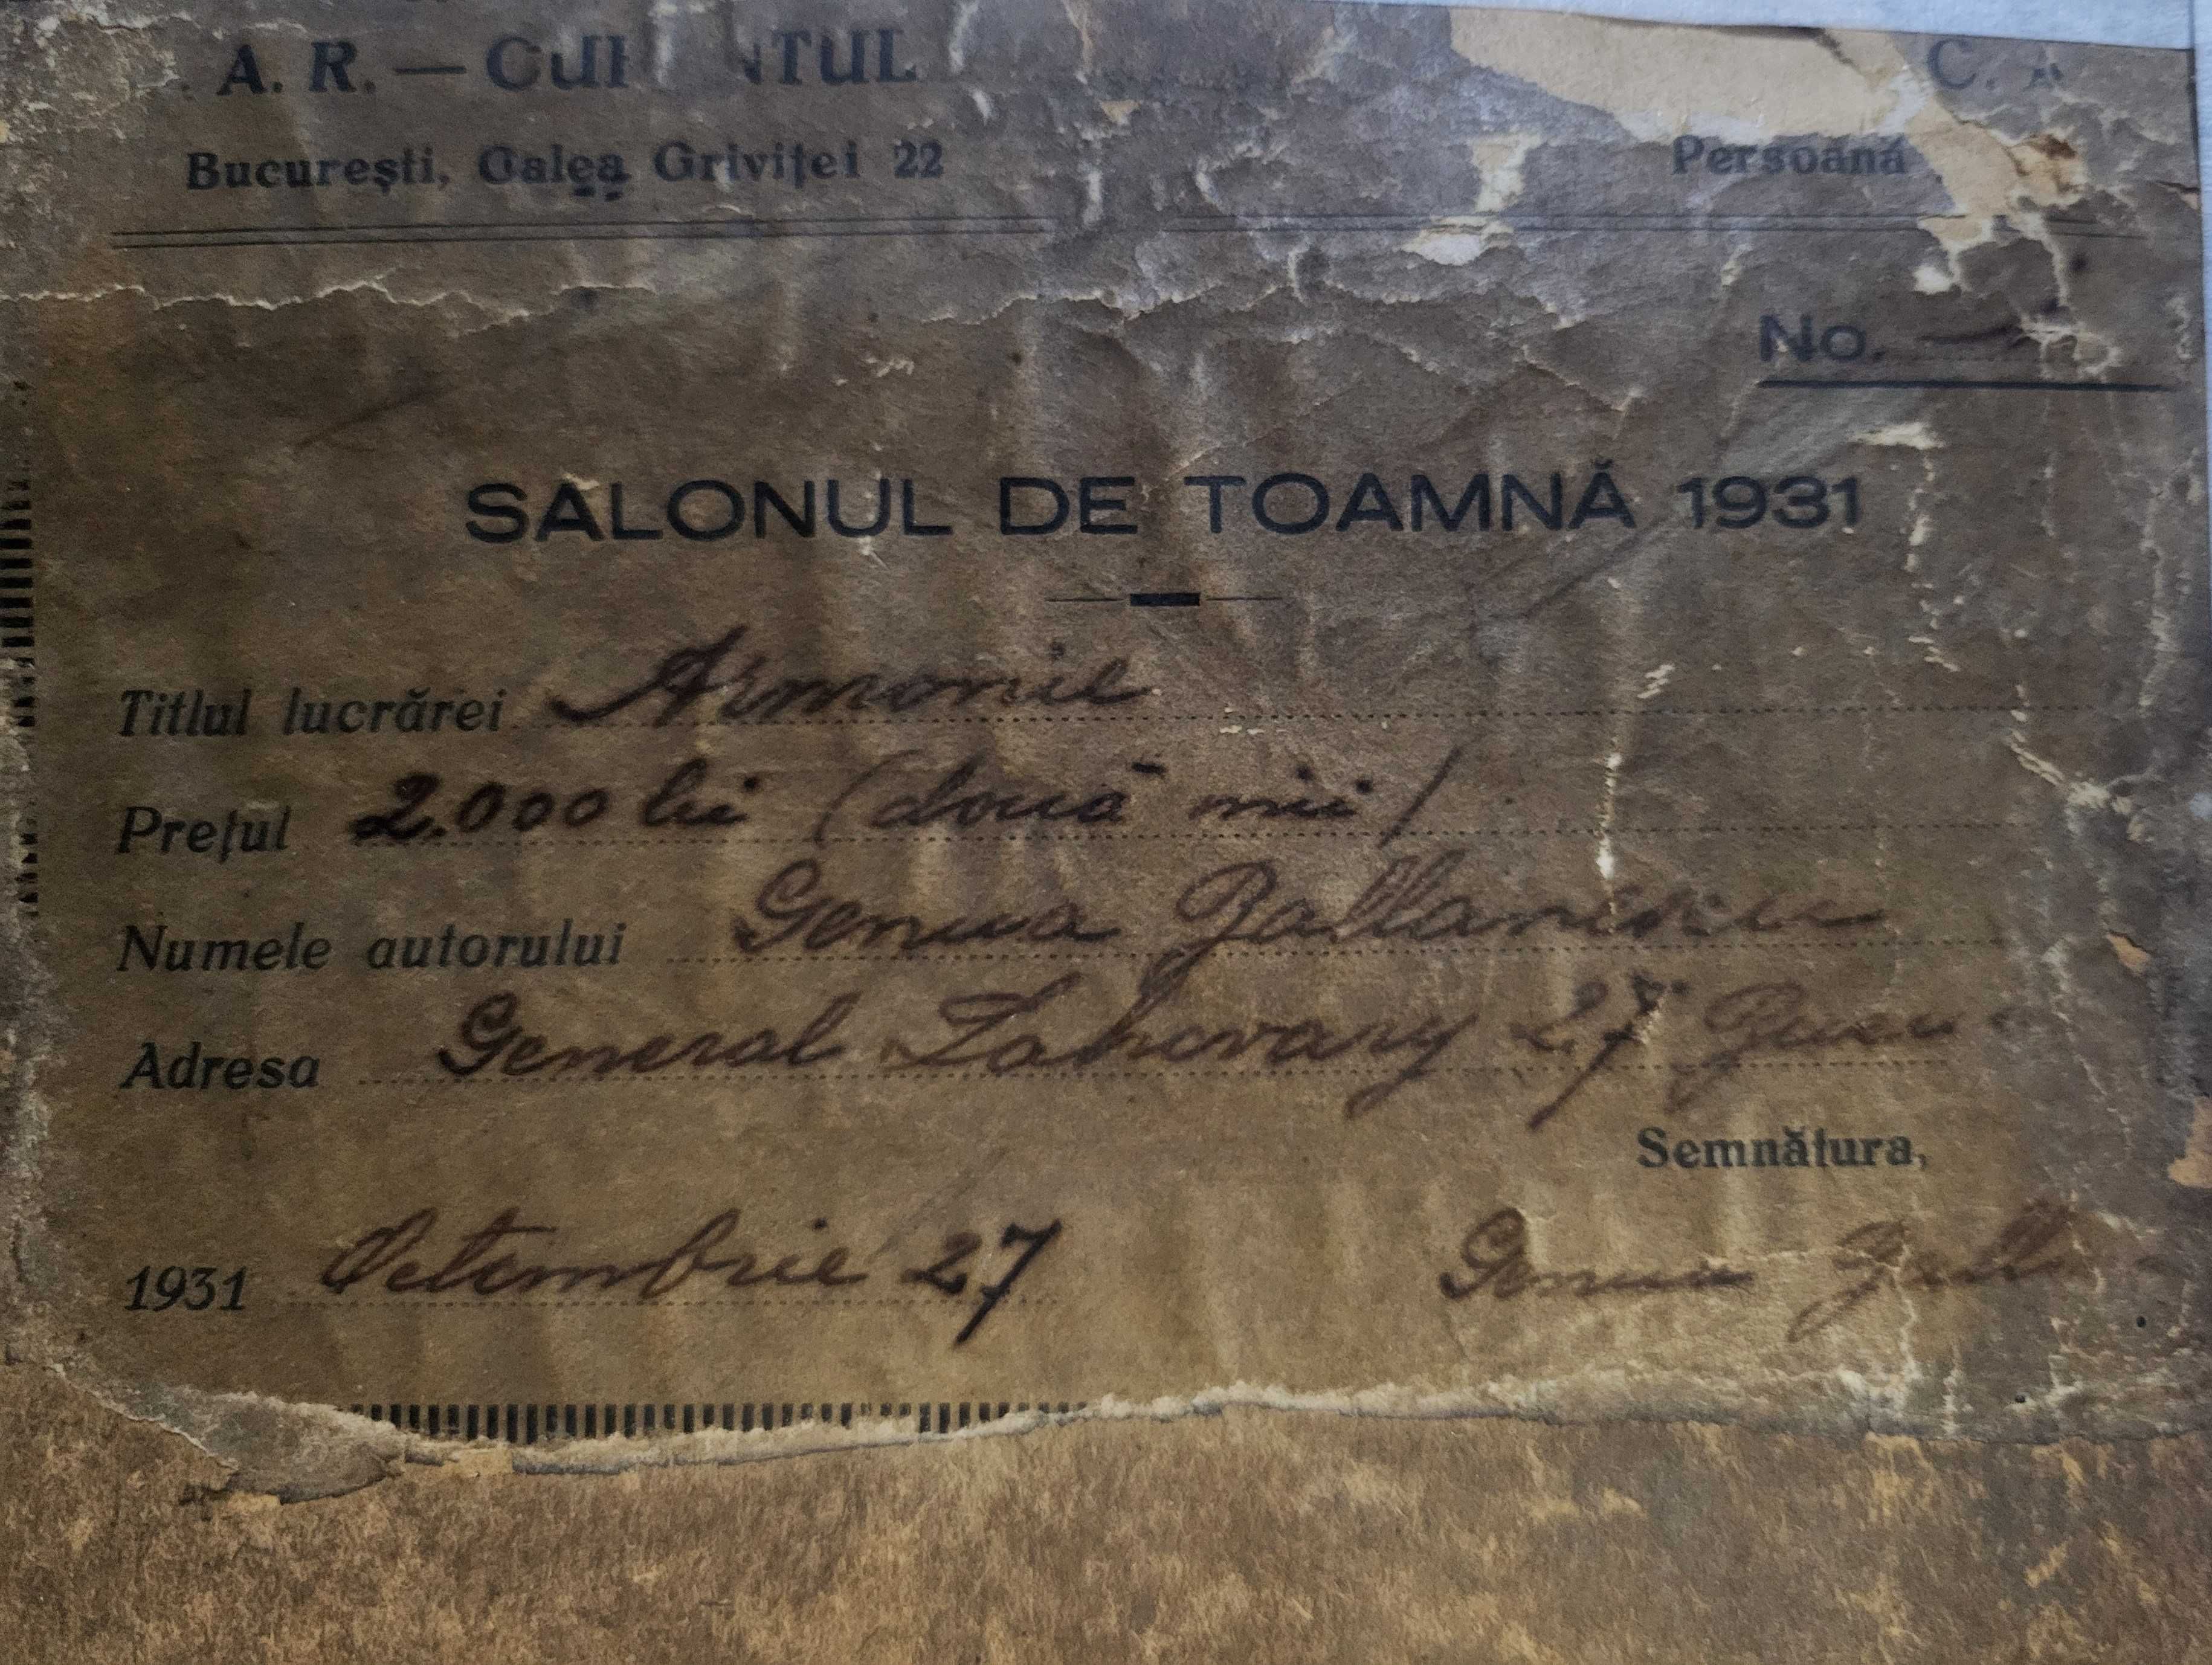 SALONUL de TOAMNĂ 1931- Tablou VECHI, cu eticheta expoziției. Semnat